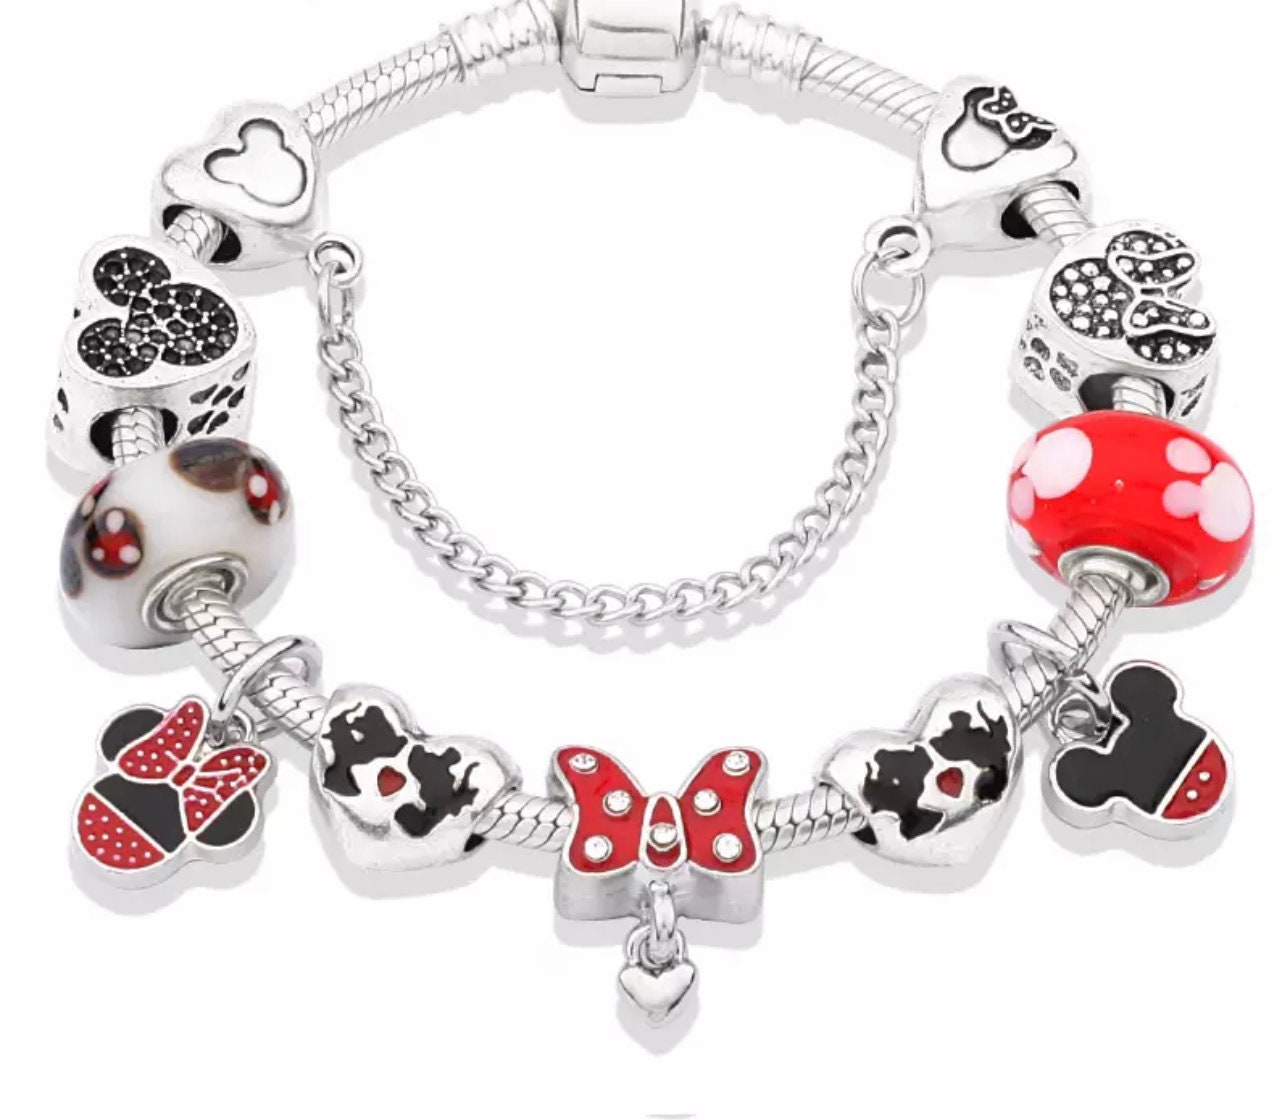 SALE Mickey Mouse Disney Charm Bracelet Pandora Style - Etsy